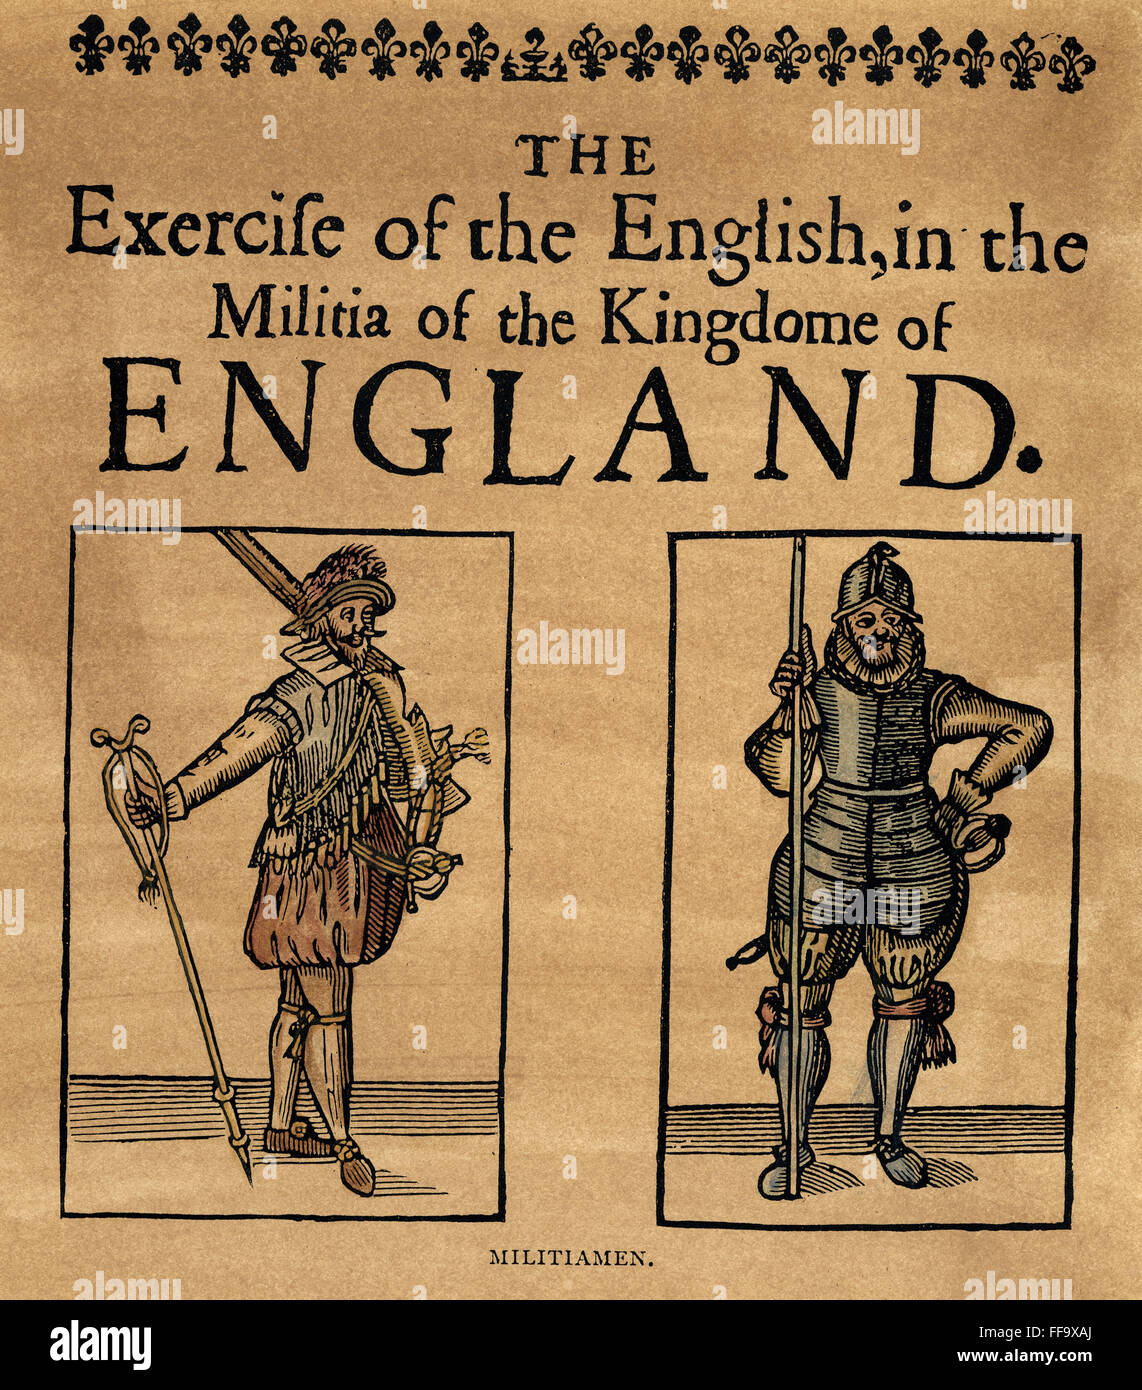 MILIZIONÄRE, c1642. NUM Cavalier (links) und eine Roundhead (rechts), aus der Zeit von König Charles i. von England. Titelseite des Traktes 'Die Ausübung der Engländer in der Miliz der englischen Kingdome' c1642. Stockfoto